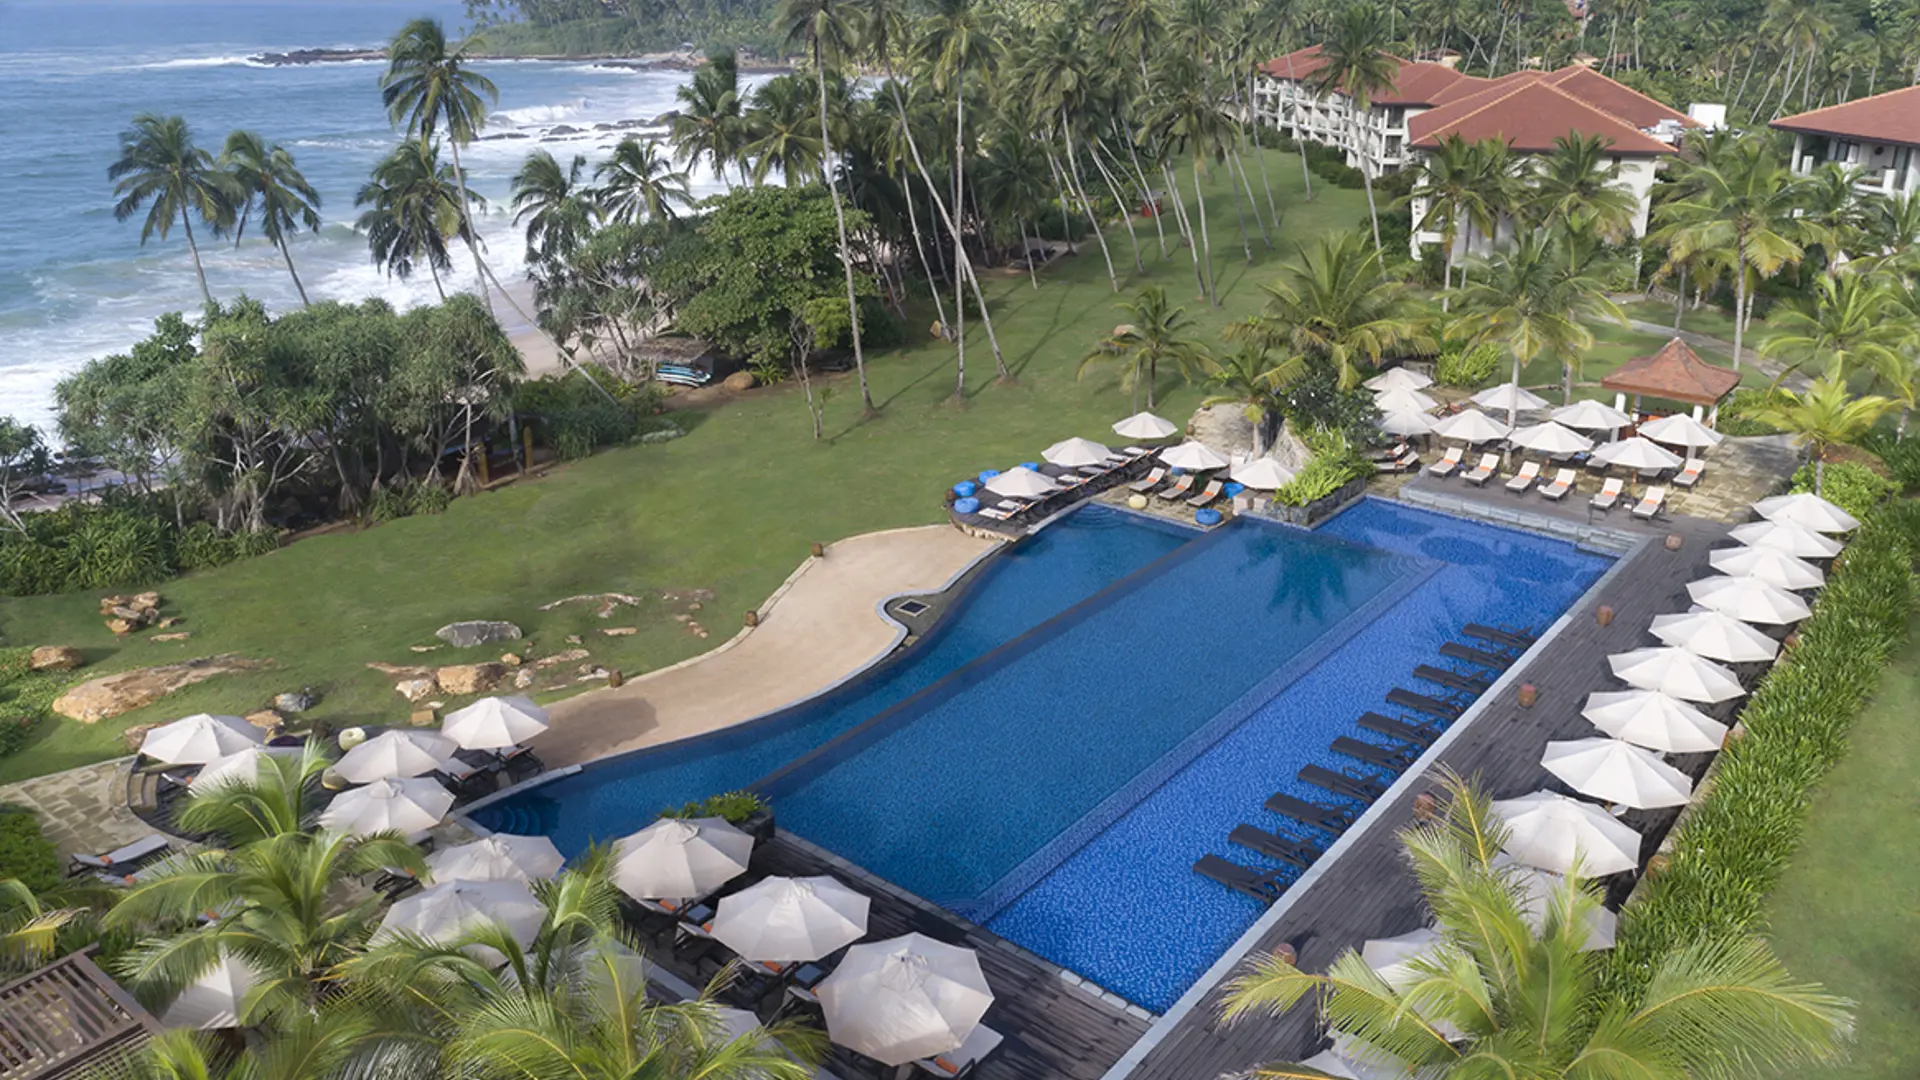 POOL - Hotellets store pool er elegant udformet og ligger i dejlige grønne omgivelser. 